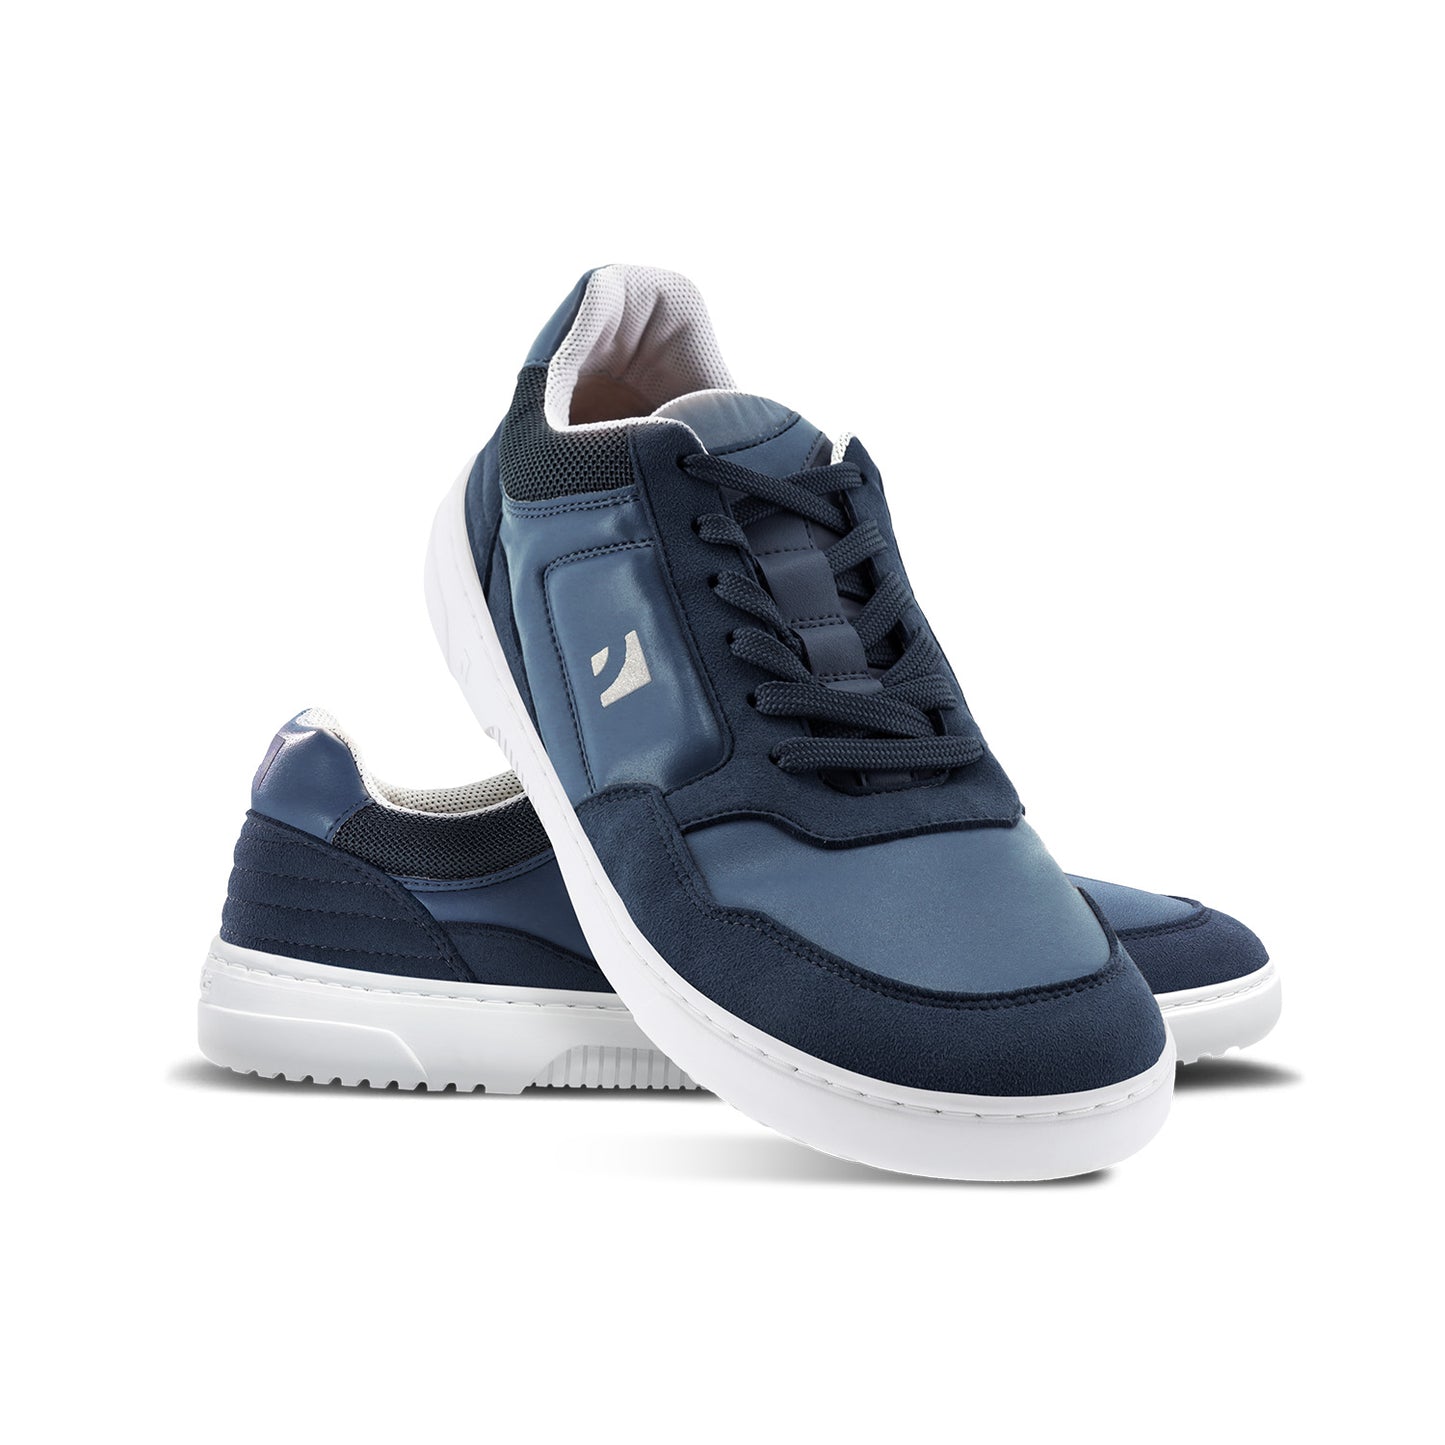 Barebarics Axiom Barefoot Sneakers - Dark Blue & White